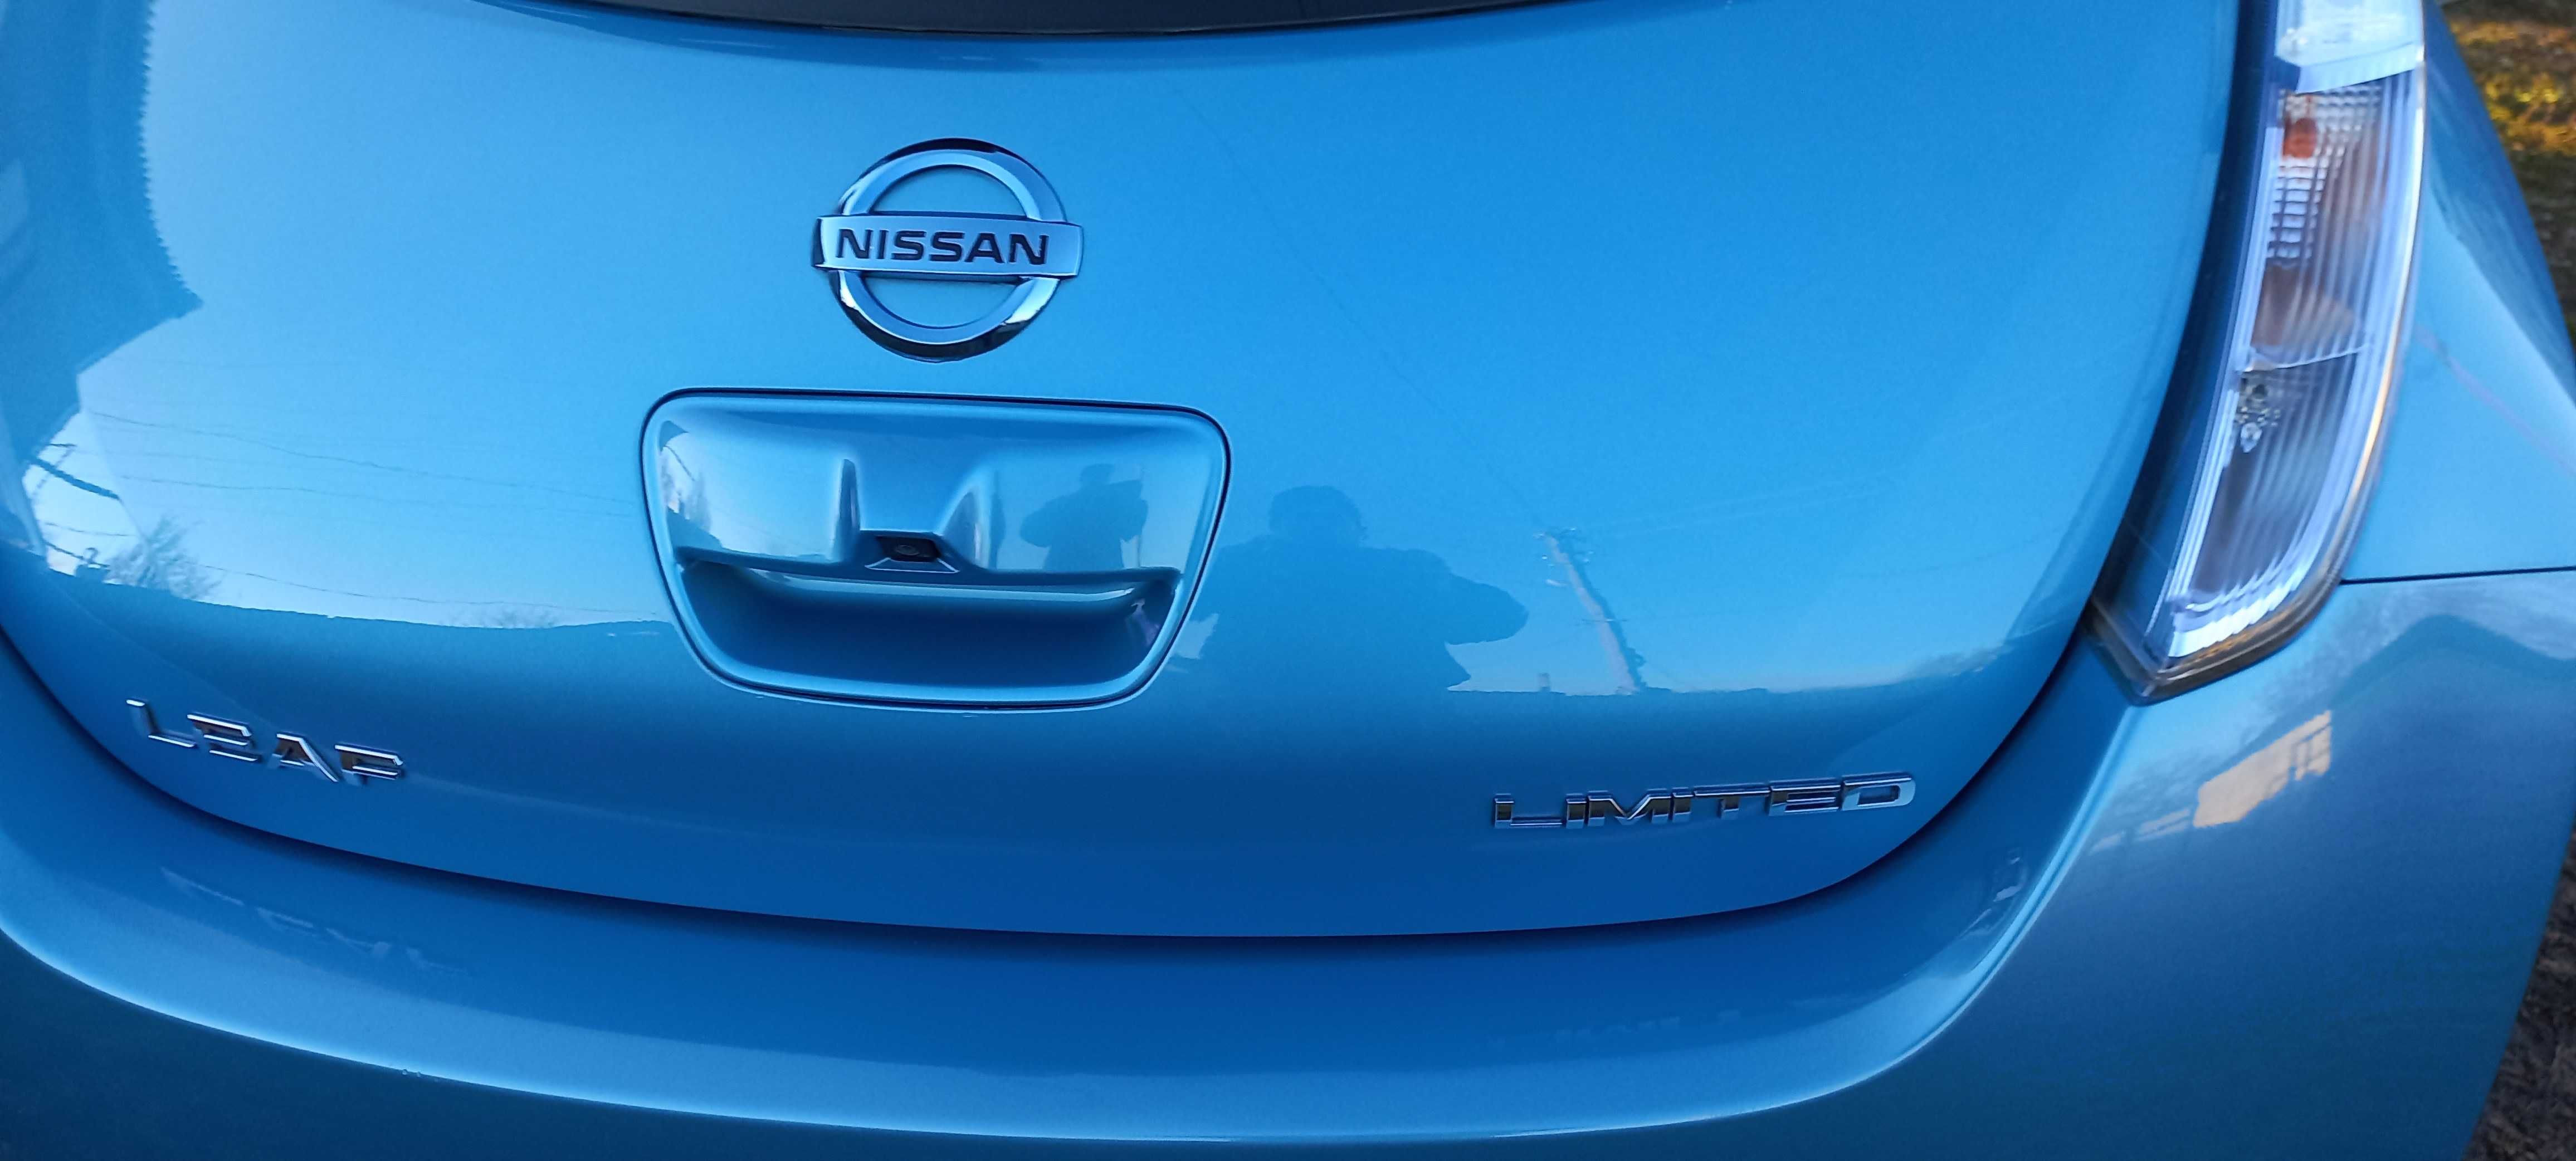 Nissan Leaf Limited